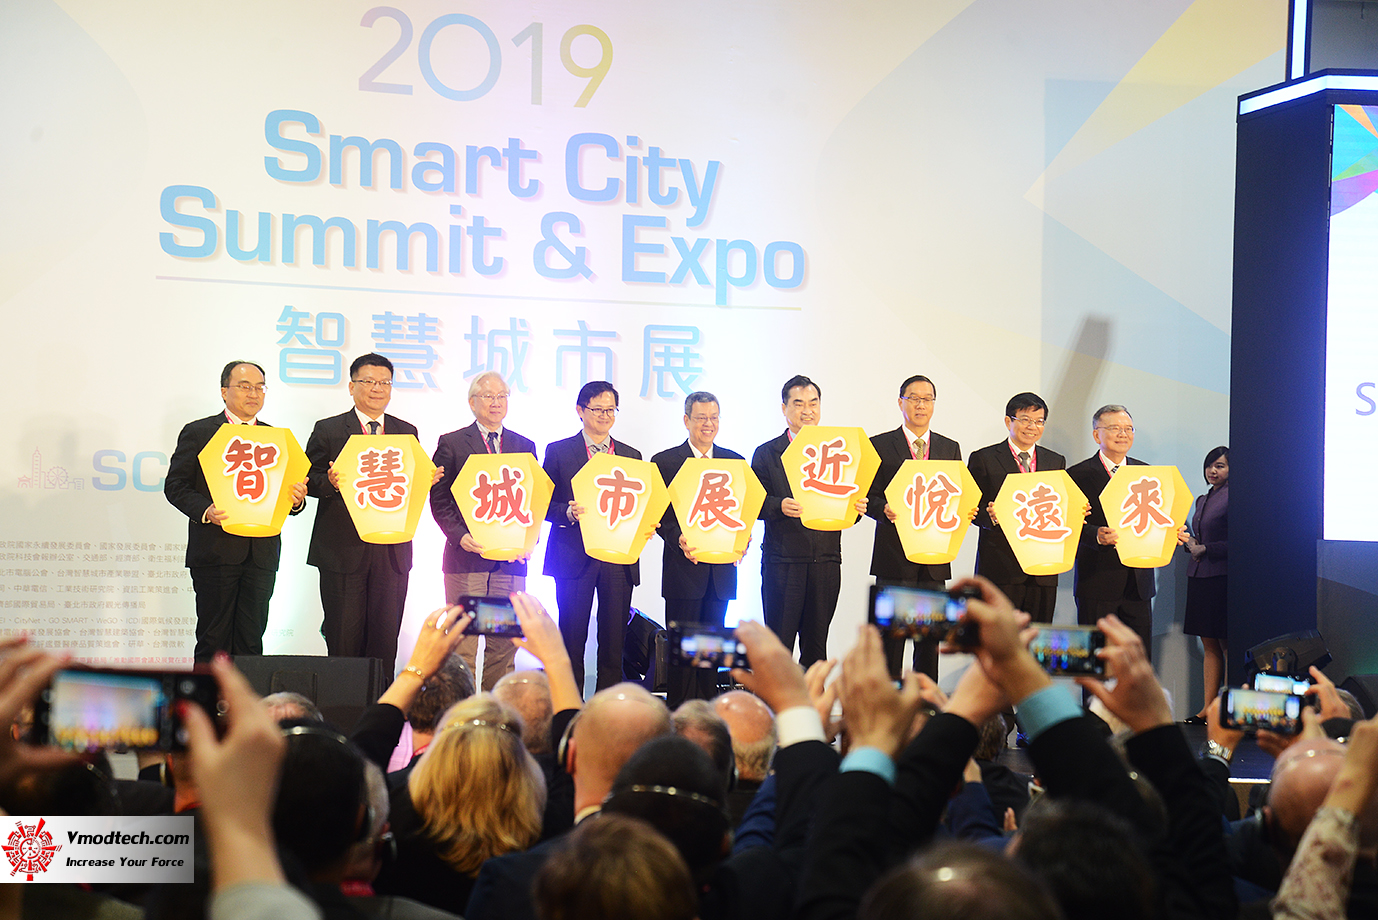 dsc 8347 เยี่ยมชมพิธีเปิด 2019 SMART CITY SUMMIT & EXPO ณ กรุงไทเป ประเทศไต้หวัน 